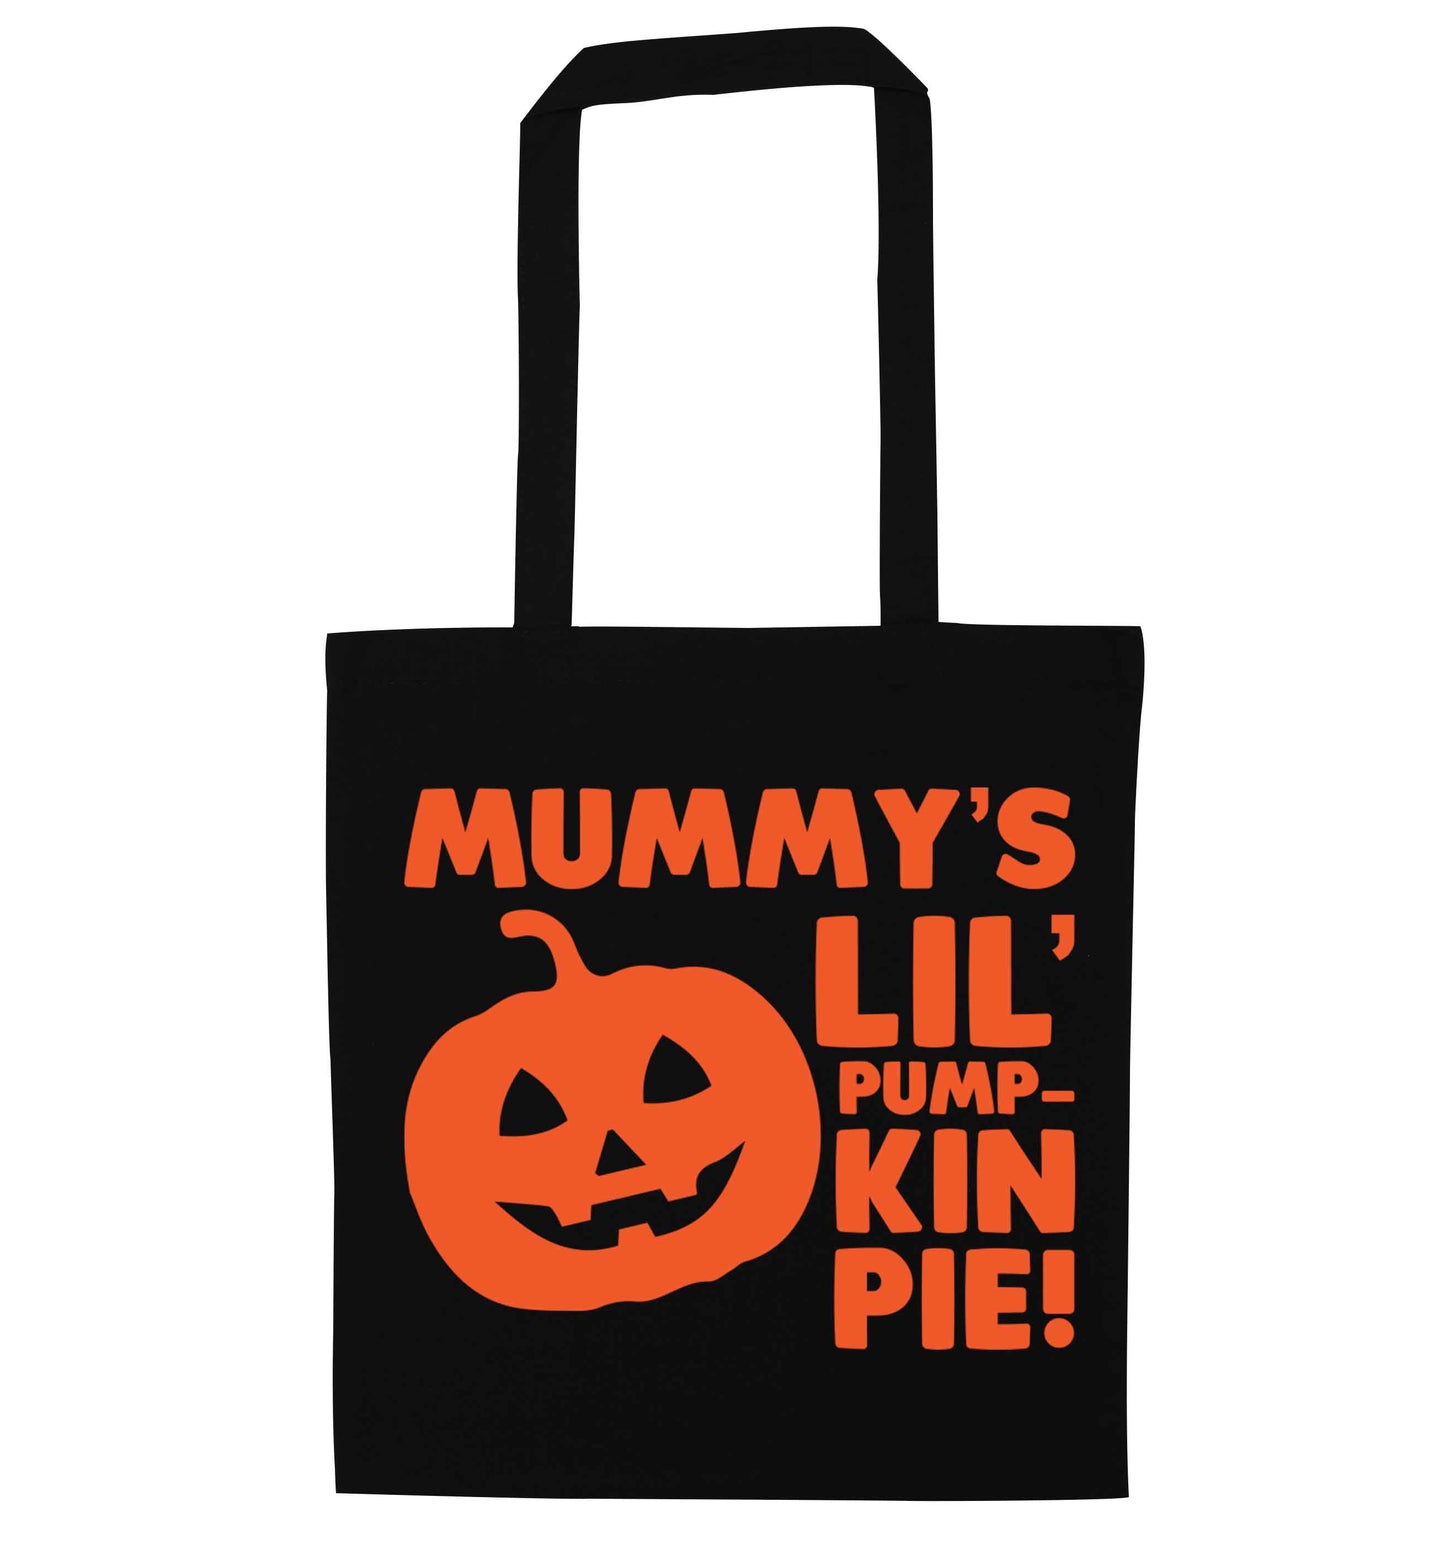 Mummy's lil' pumpkin pie black tote bag